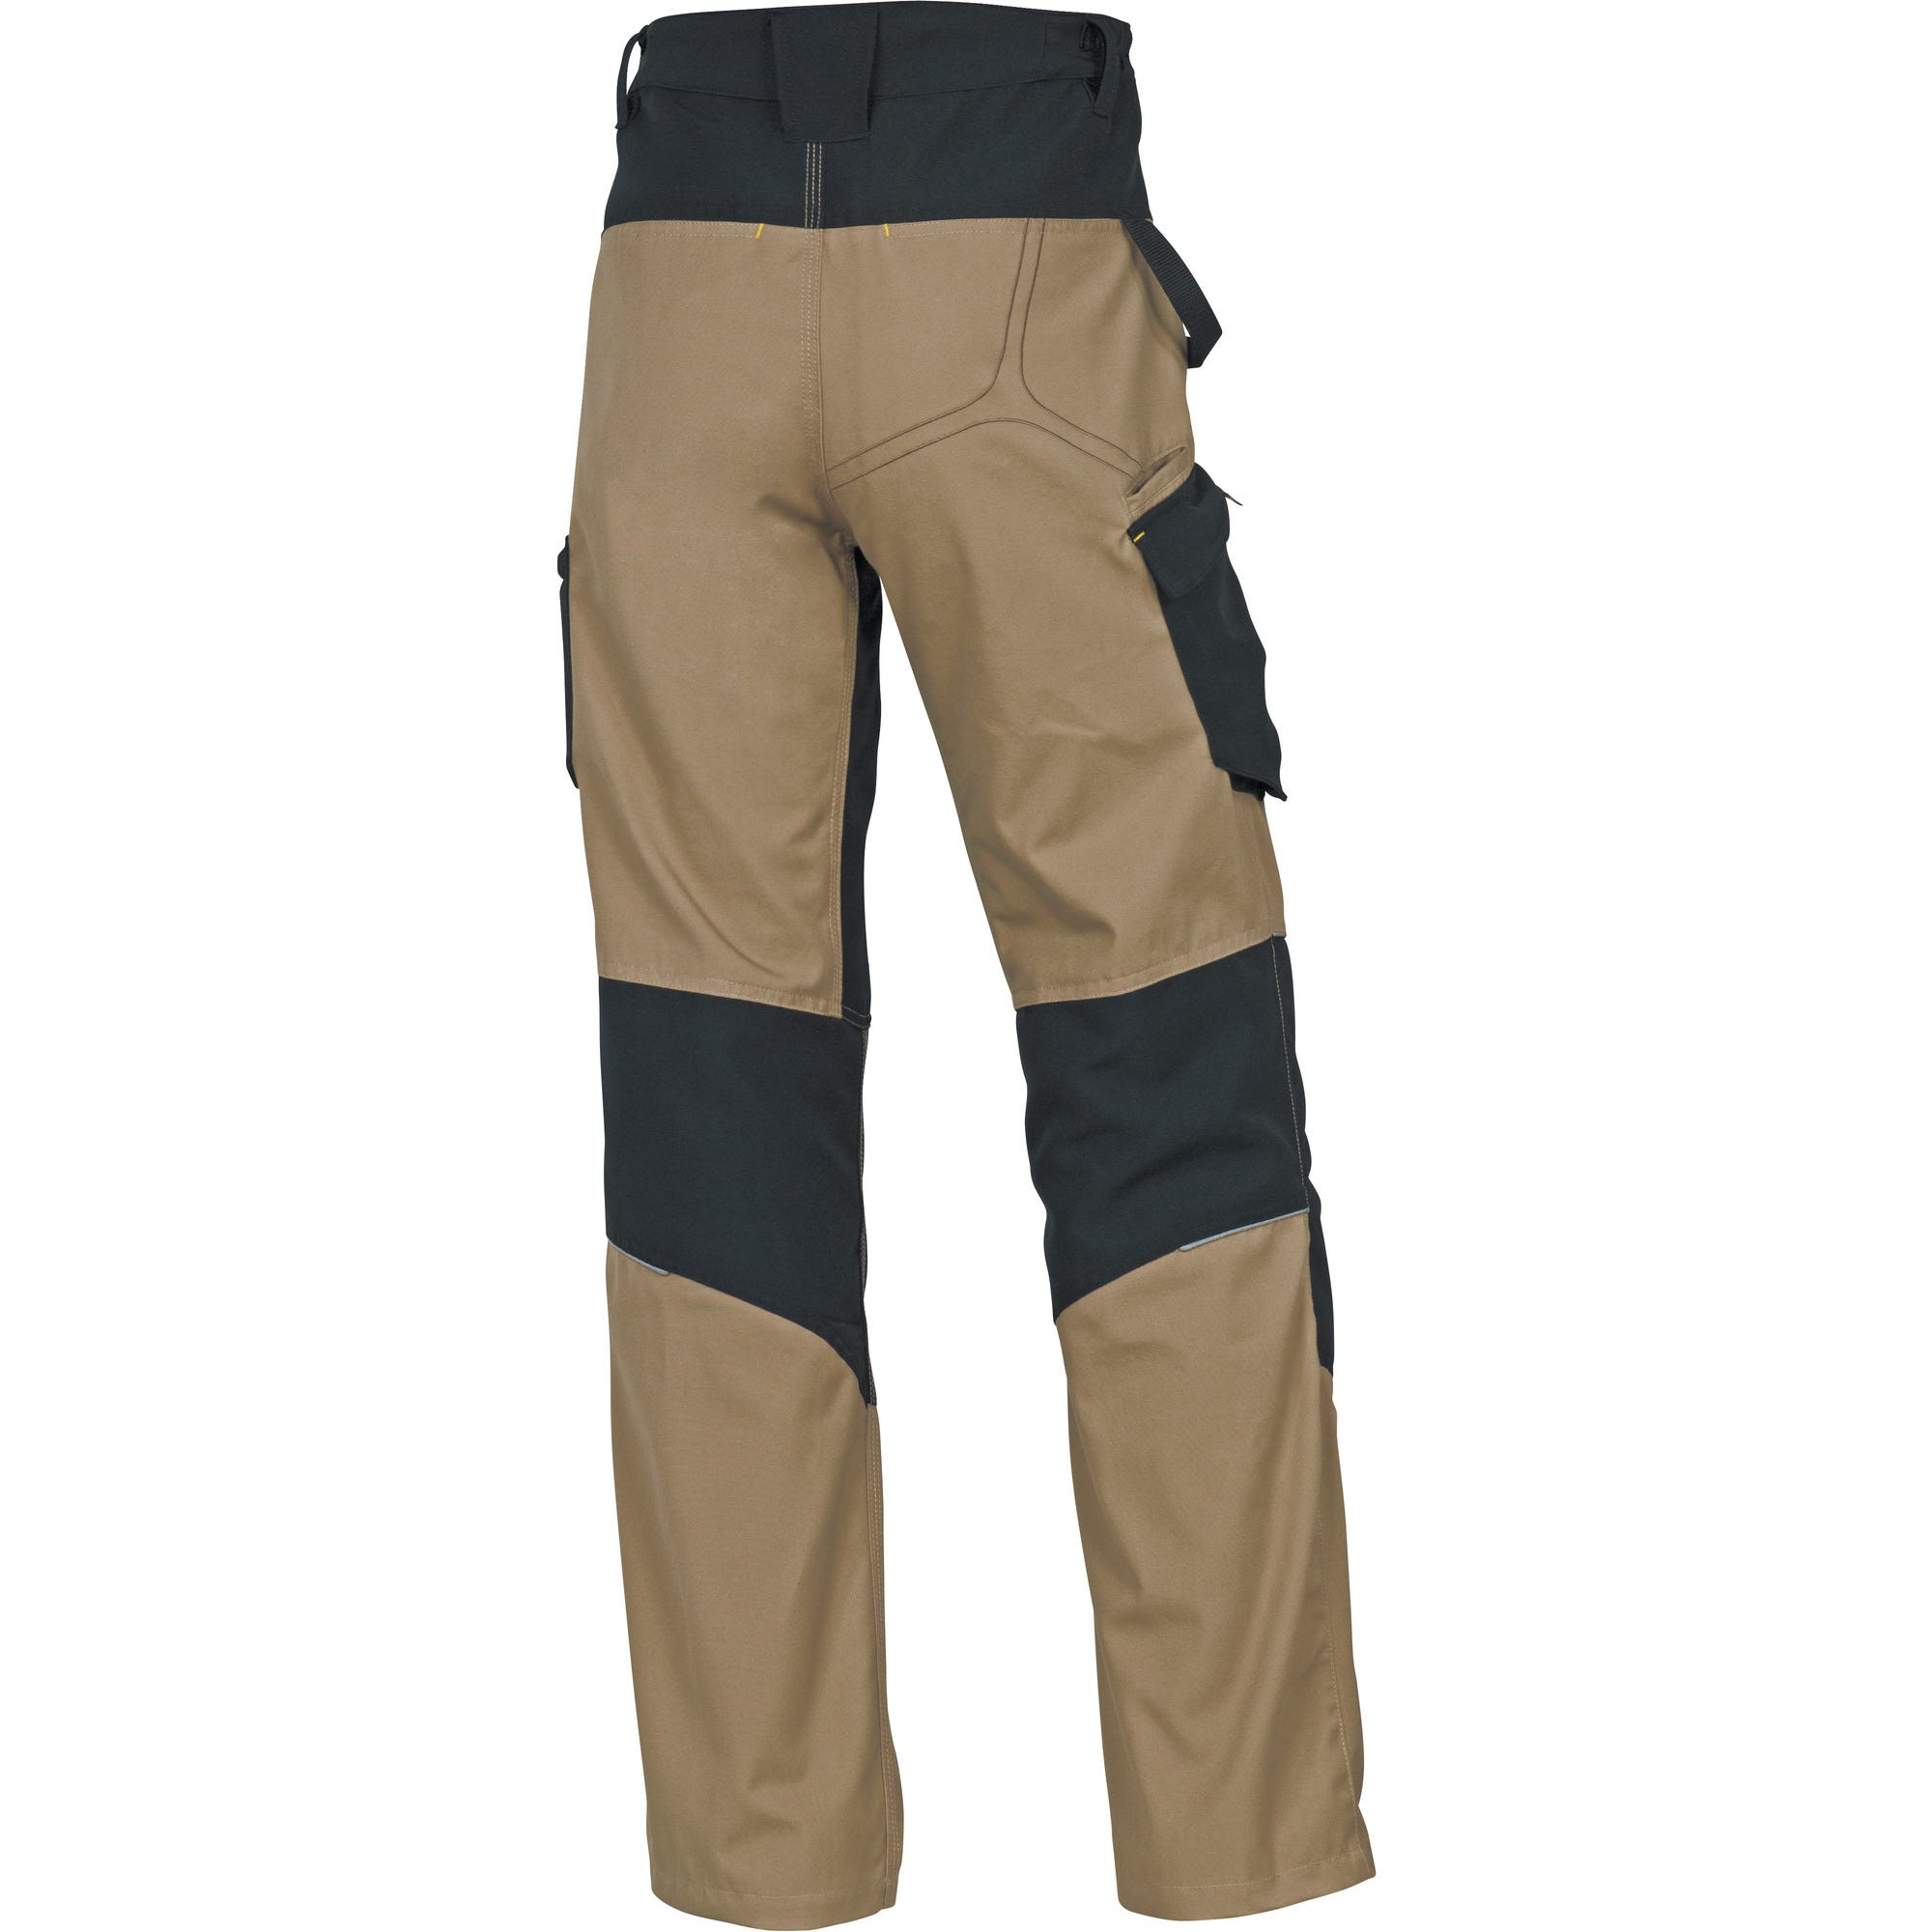 Pantalon de travail beige / noir T.L Mach5 - DELTA PLUS 0